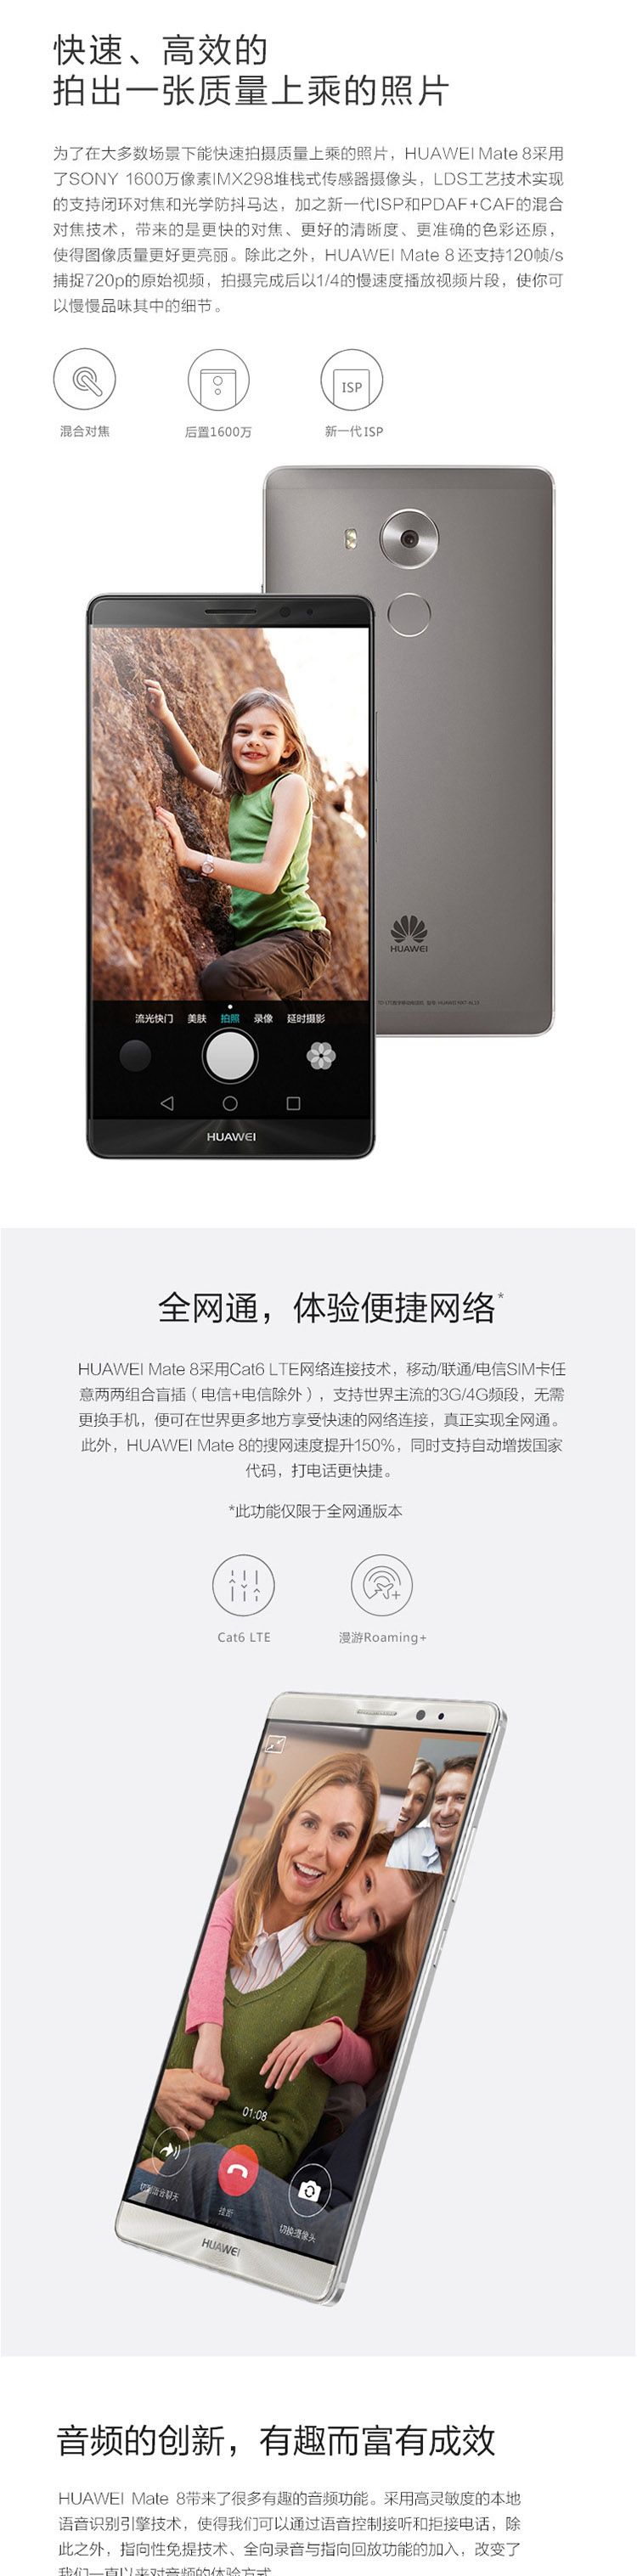 华为 HUAWEI Mate8 双卡双待 移动版4G手机 3G RAM+32G ROM标配